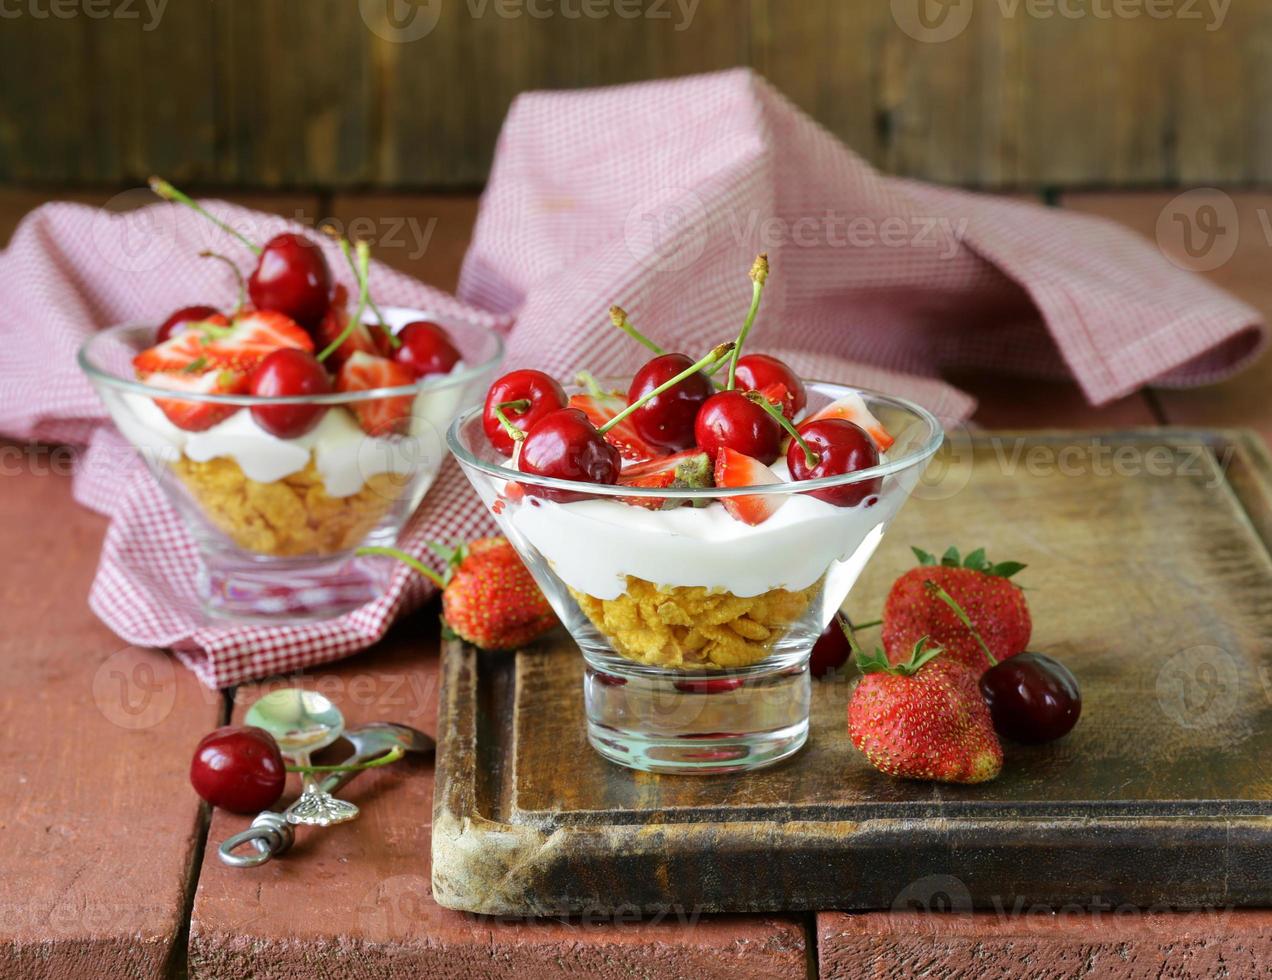 mjölkyoghurtefterrätt med körsbär och jordgubbar foto